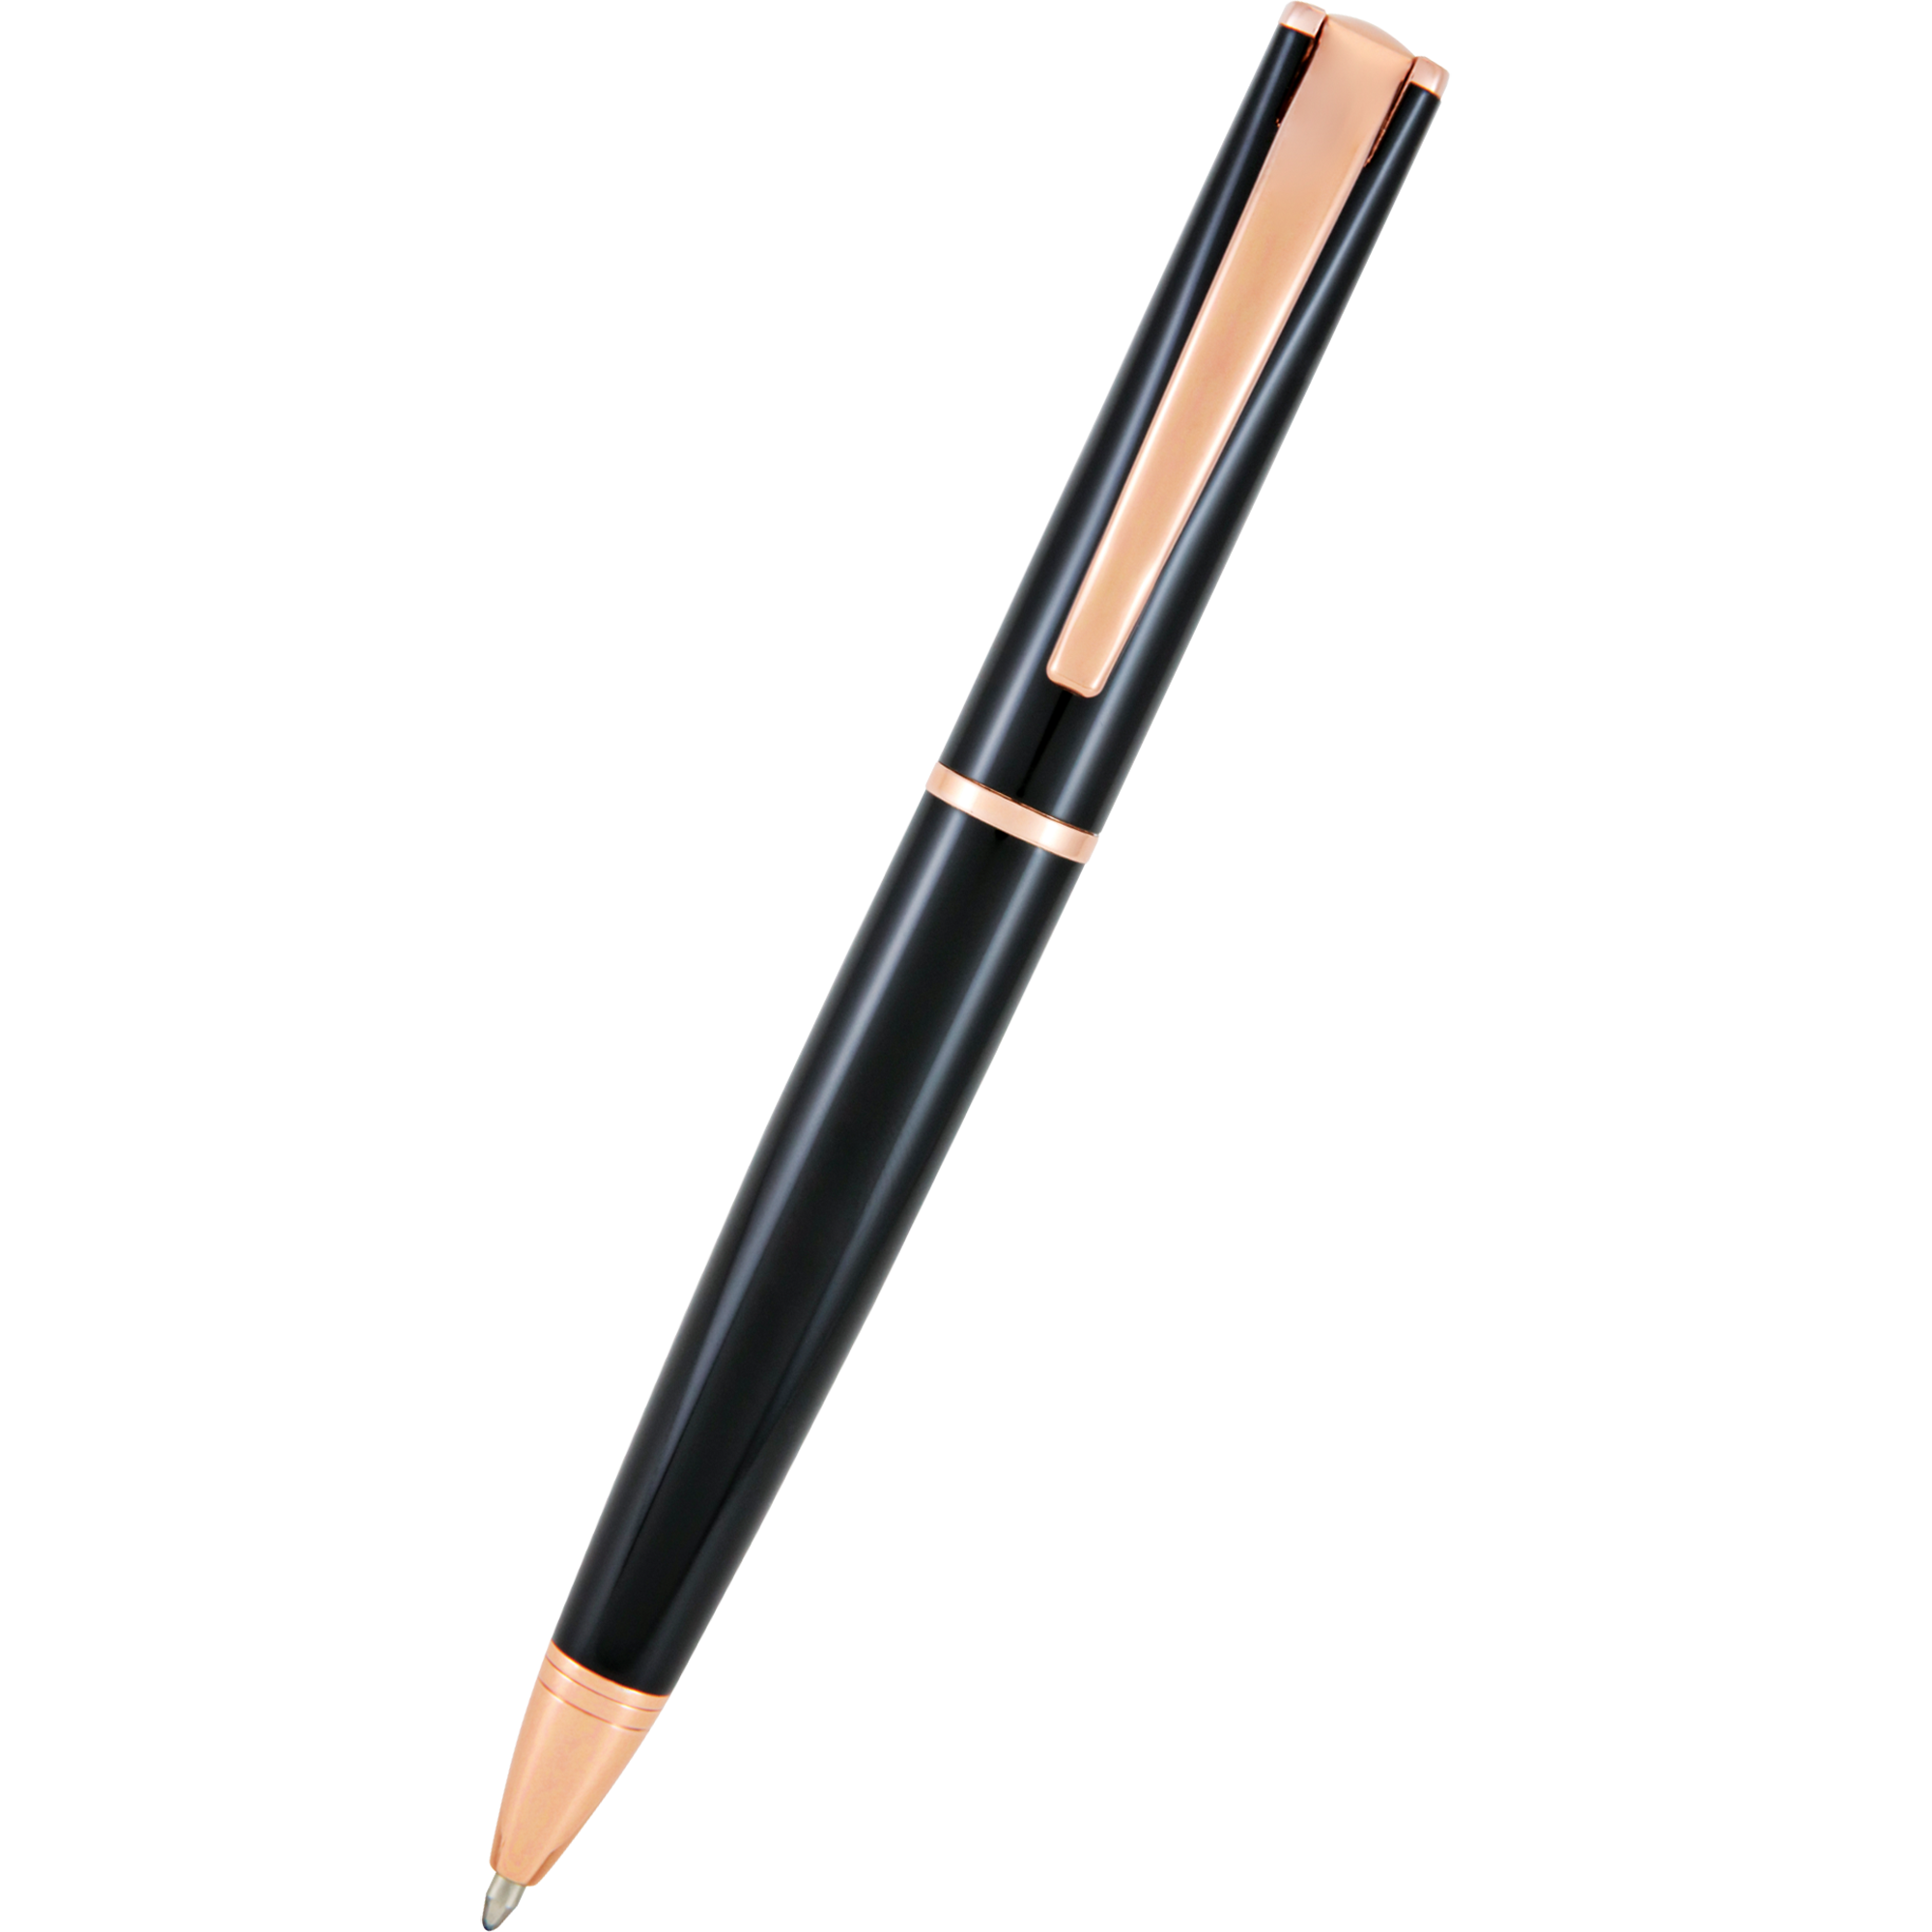 Monteverde 10-Color Ballpoint Pen